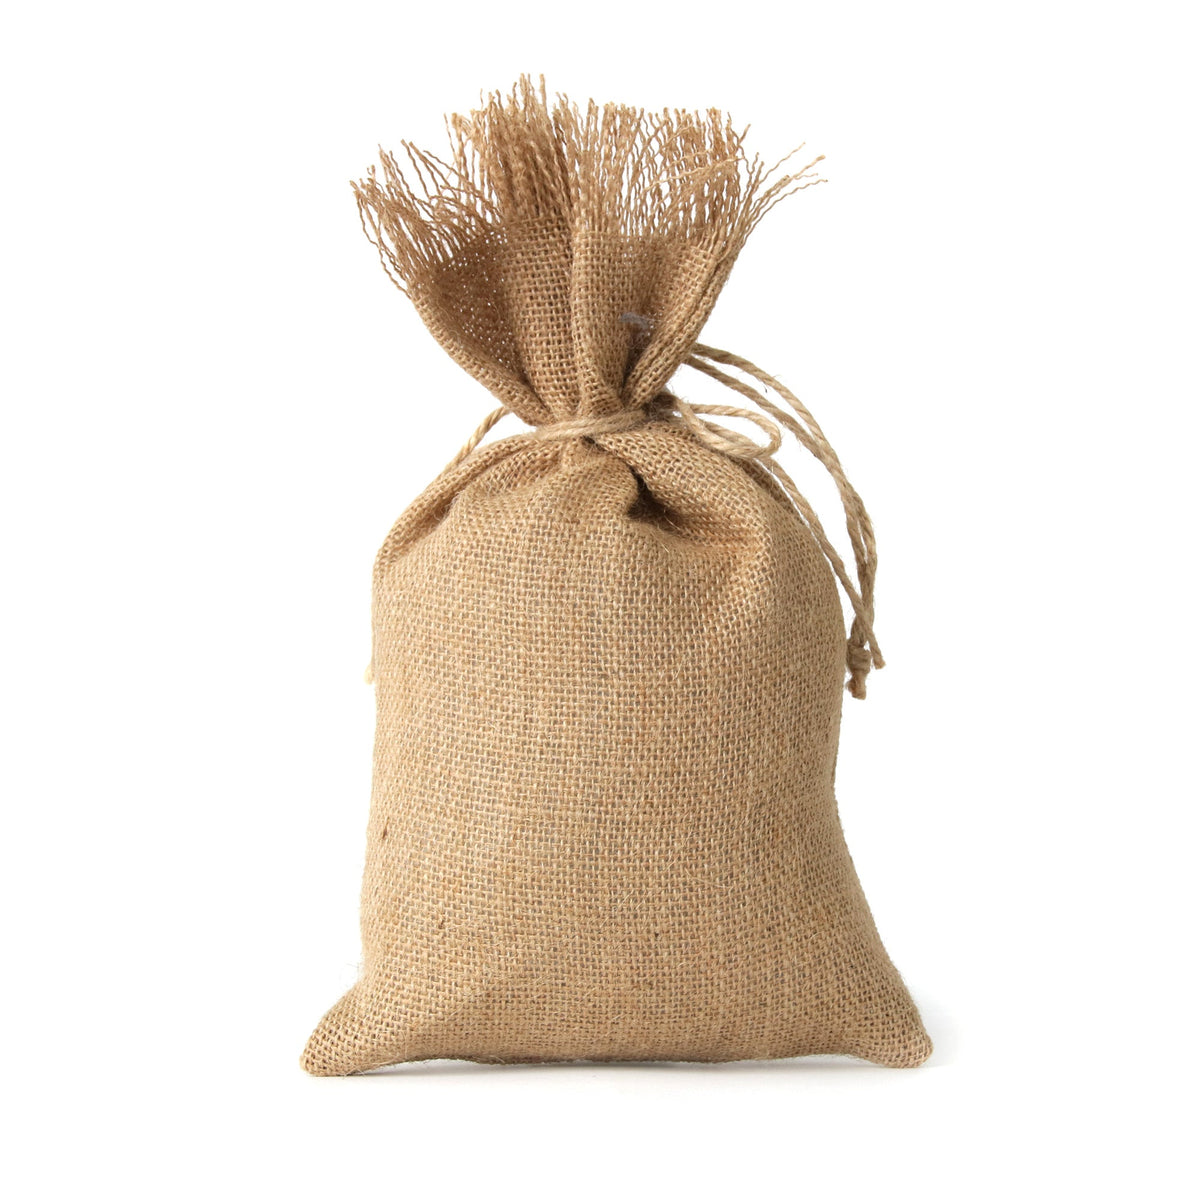 Small Burlap Bag of Seed - "Reindeer Food"